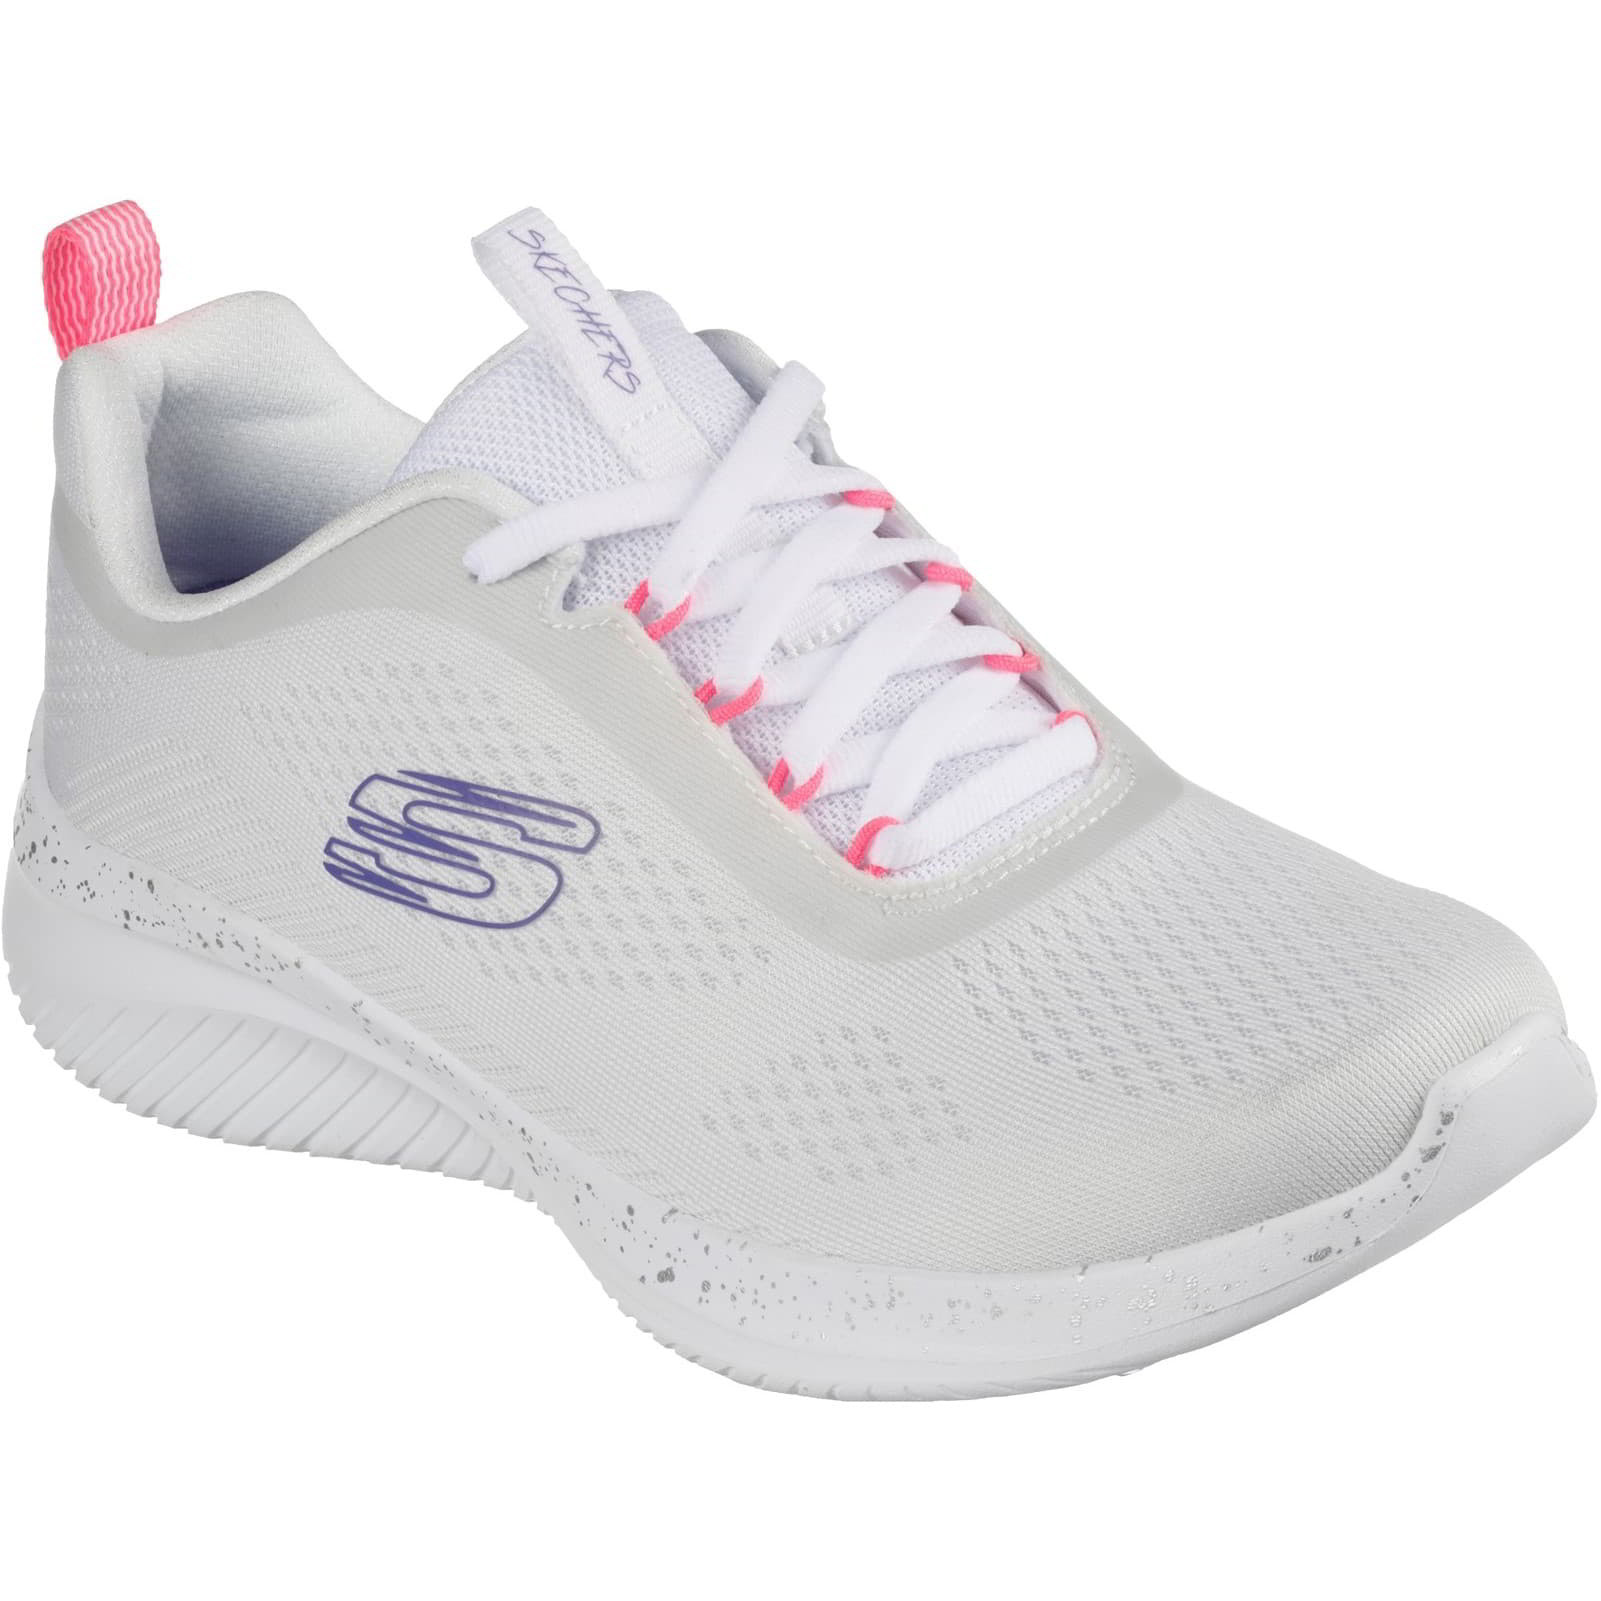 Skechers Women's Ultra Flex 3.0 New Horizons Vegan Running Shoes Trainers - UK 4